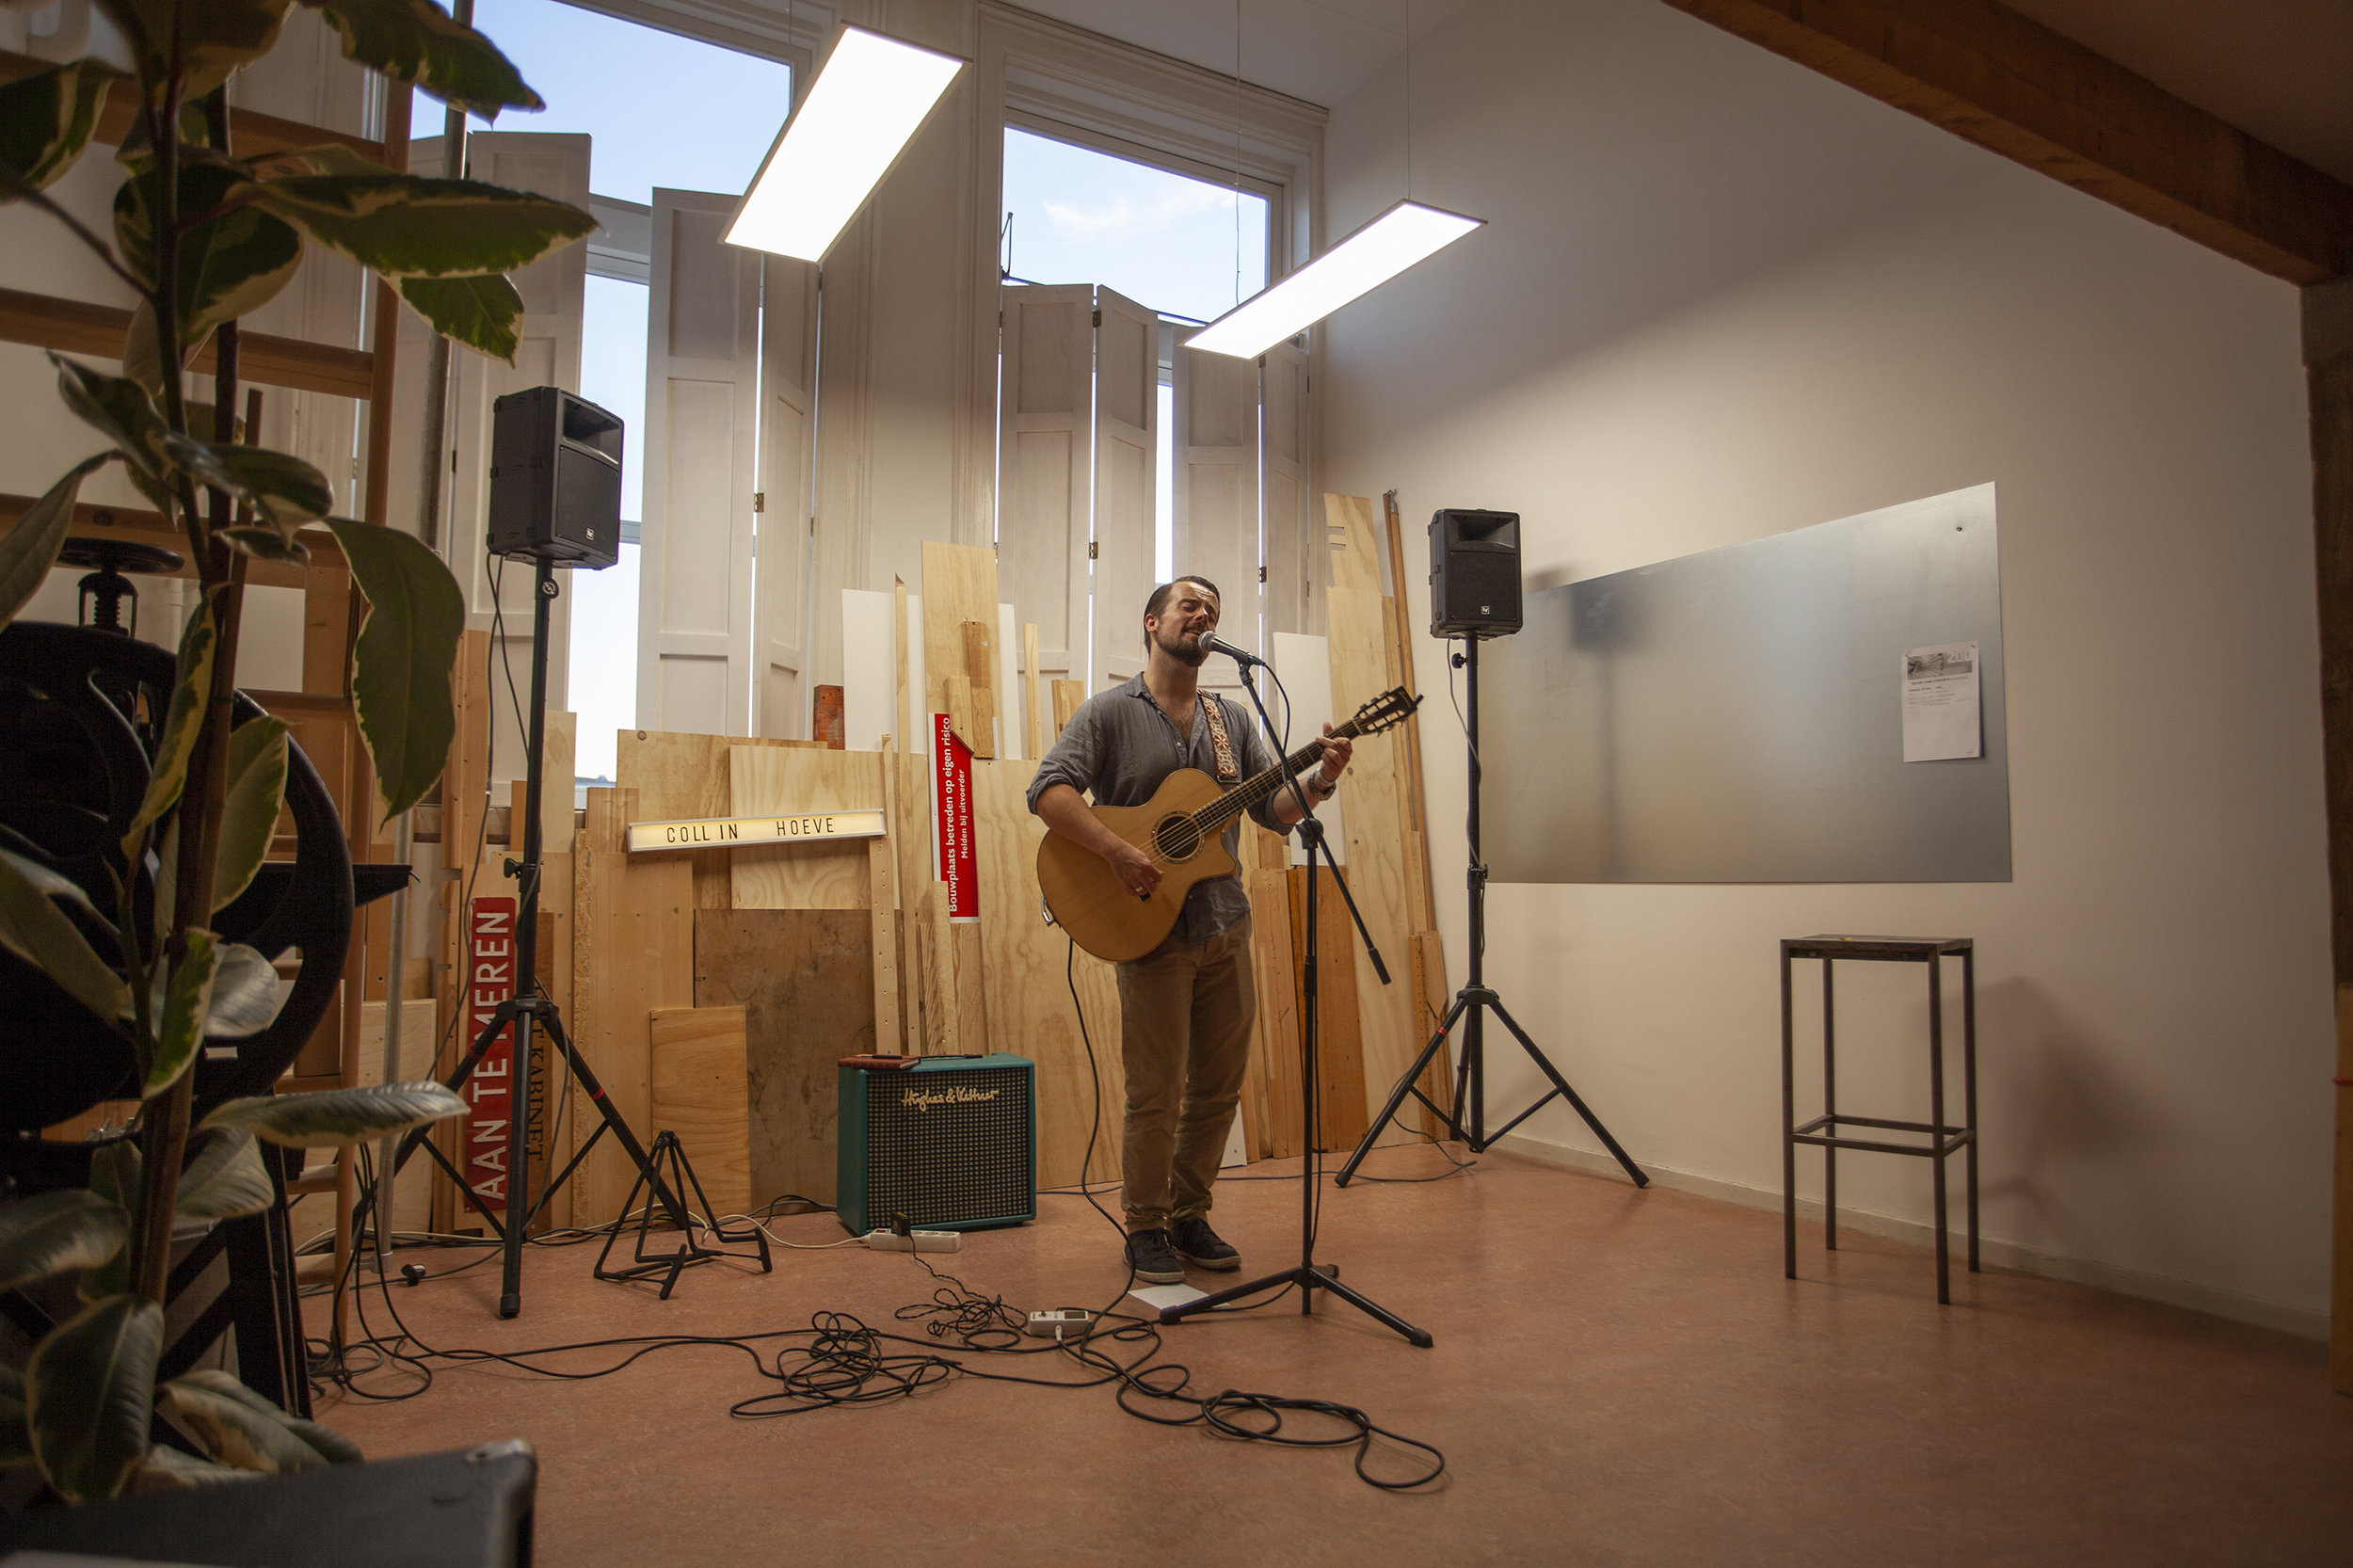  Studio Anke - Singer Songwriter stage 